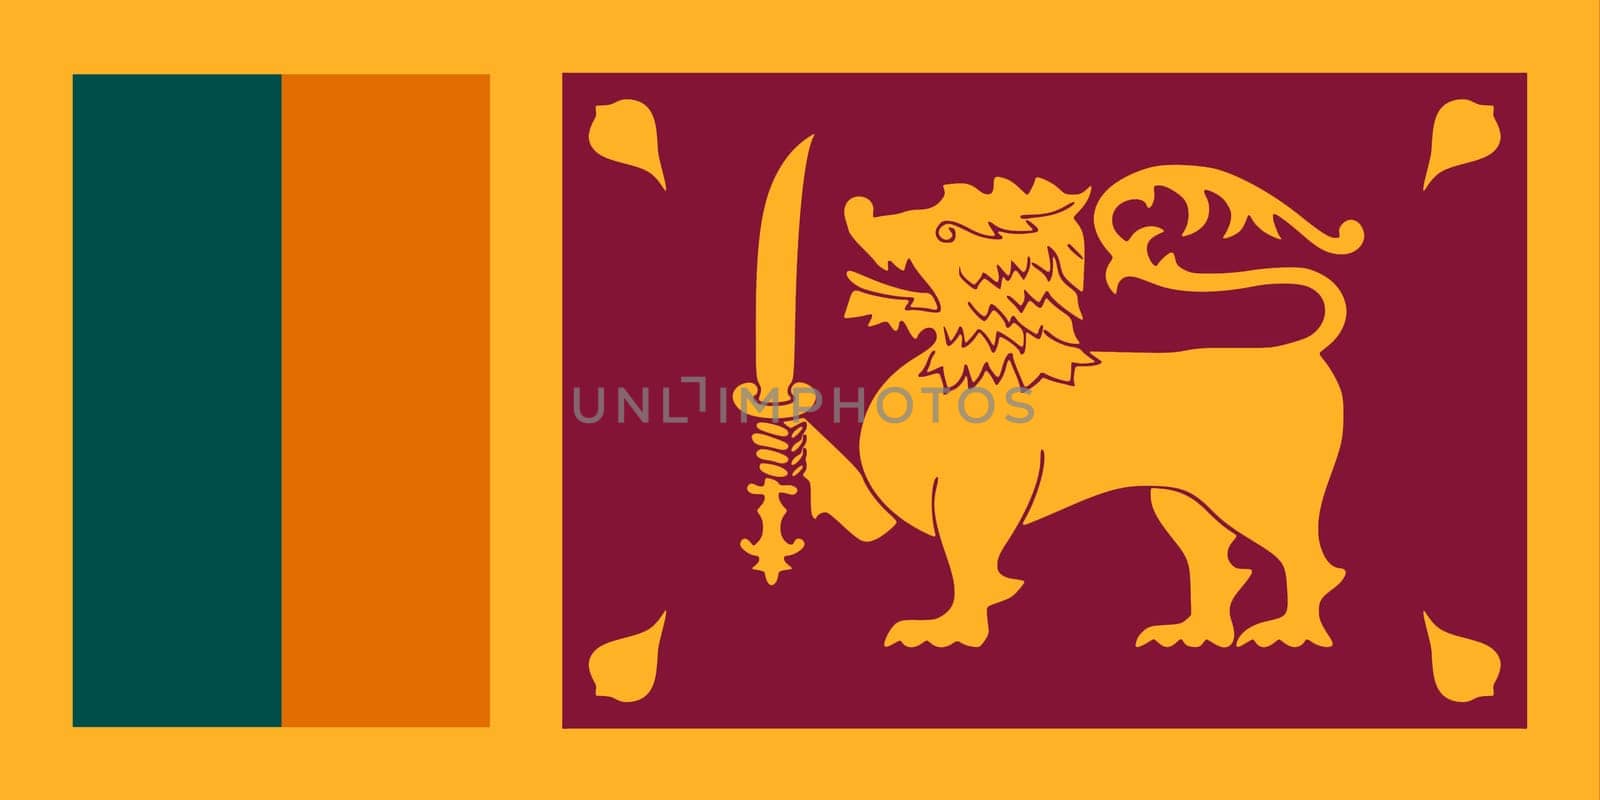 Sri Lanka flag background illustration by VivacityImages